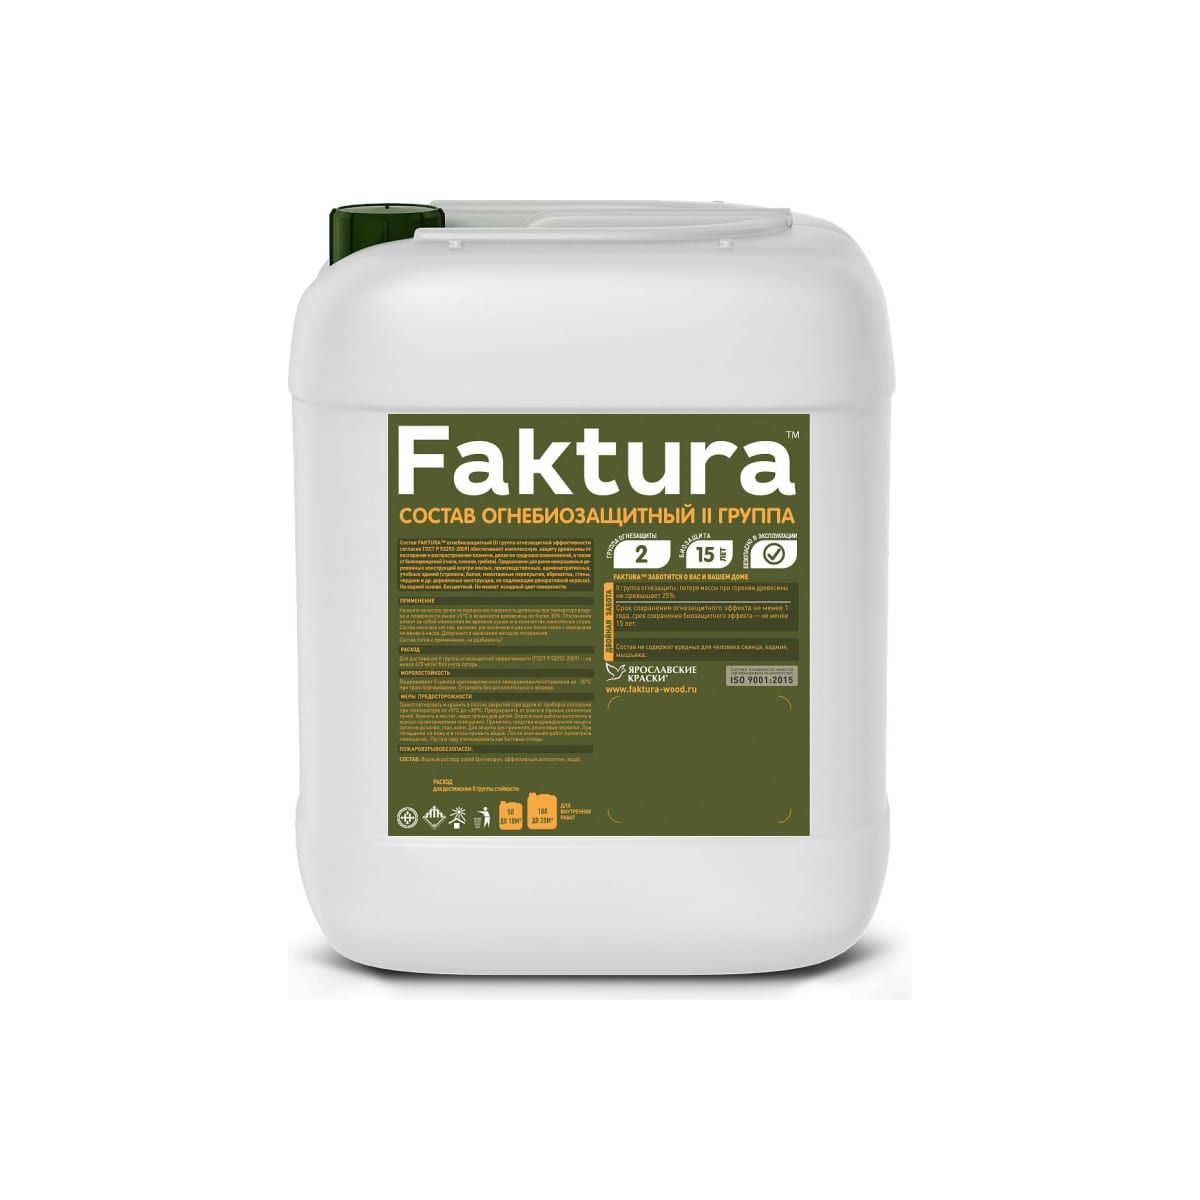 Состав огнебиозащитный Faktura II группа, бесцветный, 10 л биоцидный состав для уничтожения жуков и личинок faktura